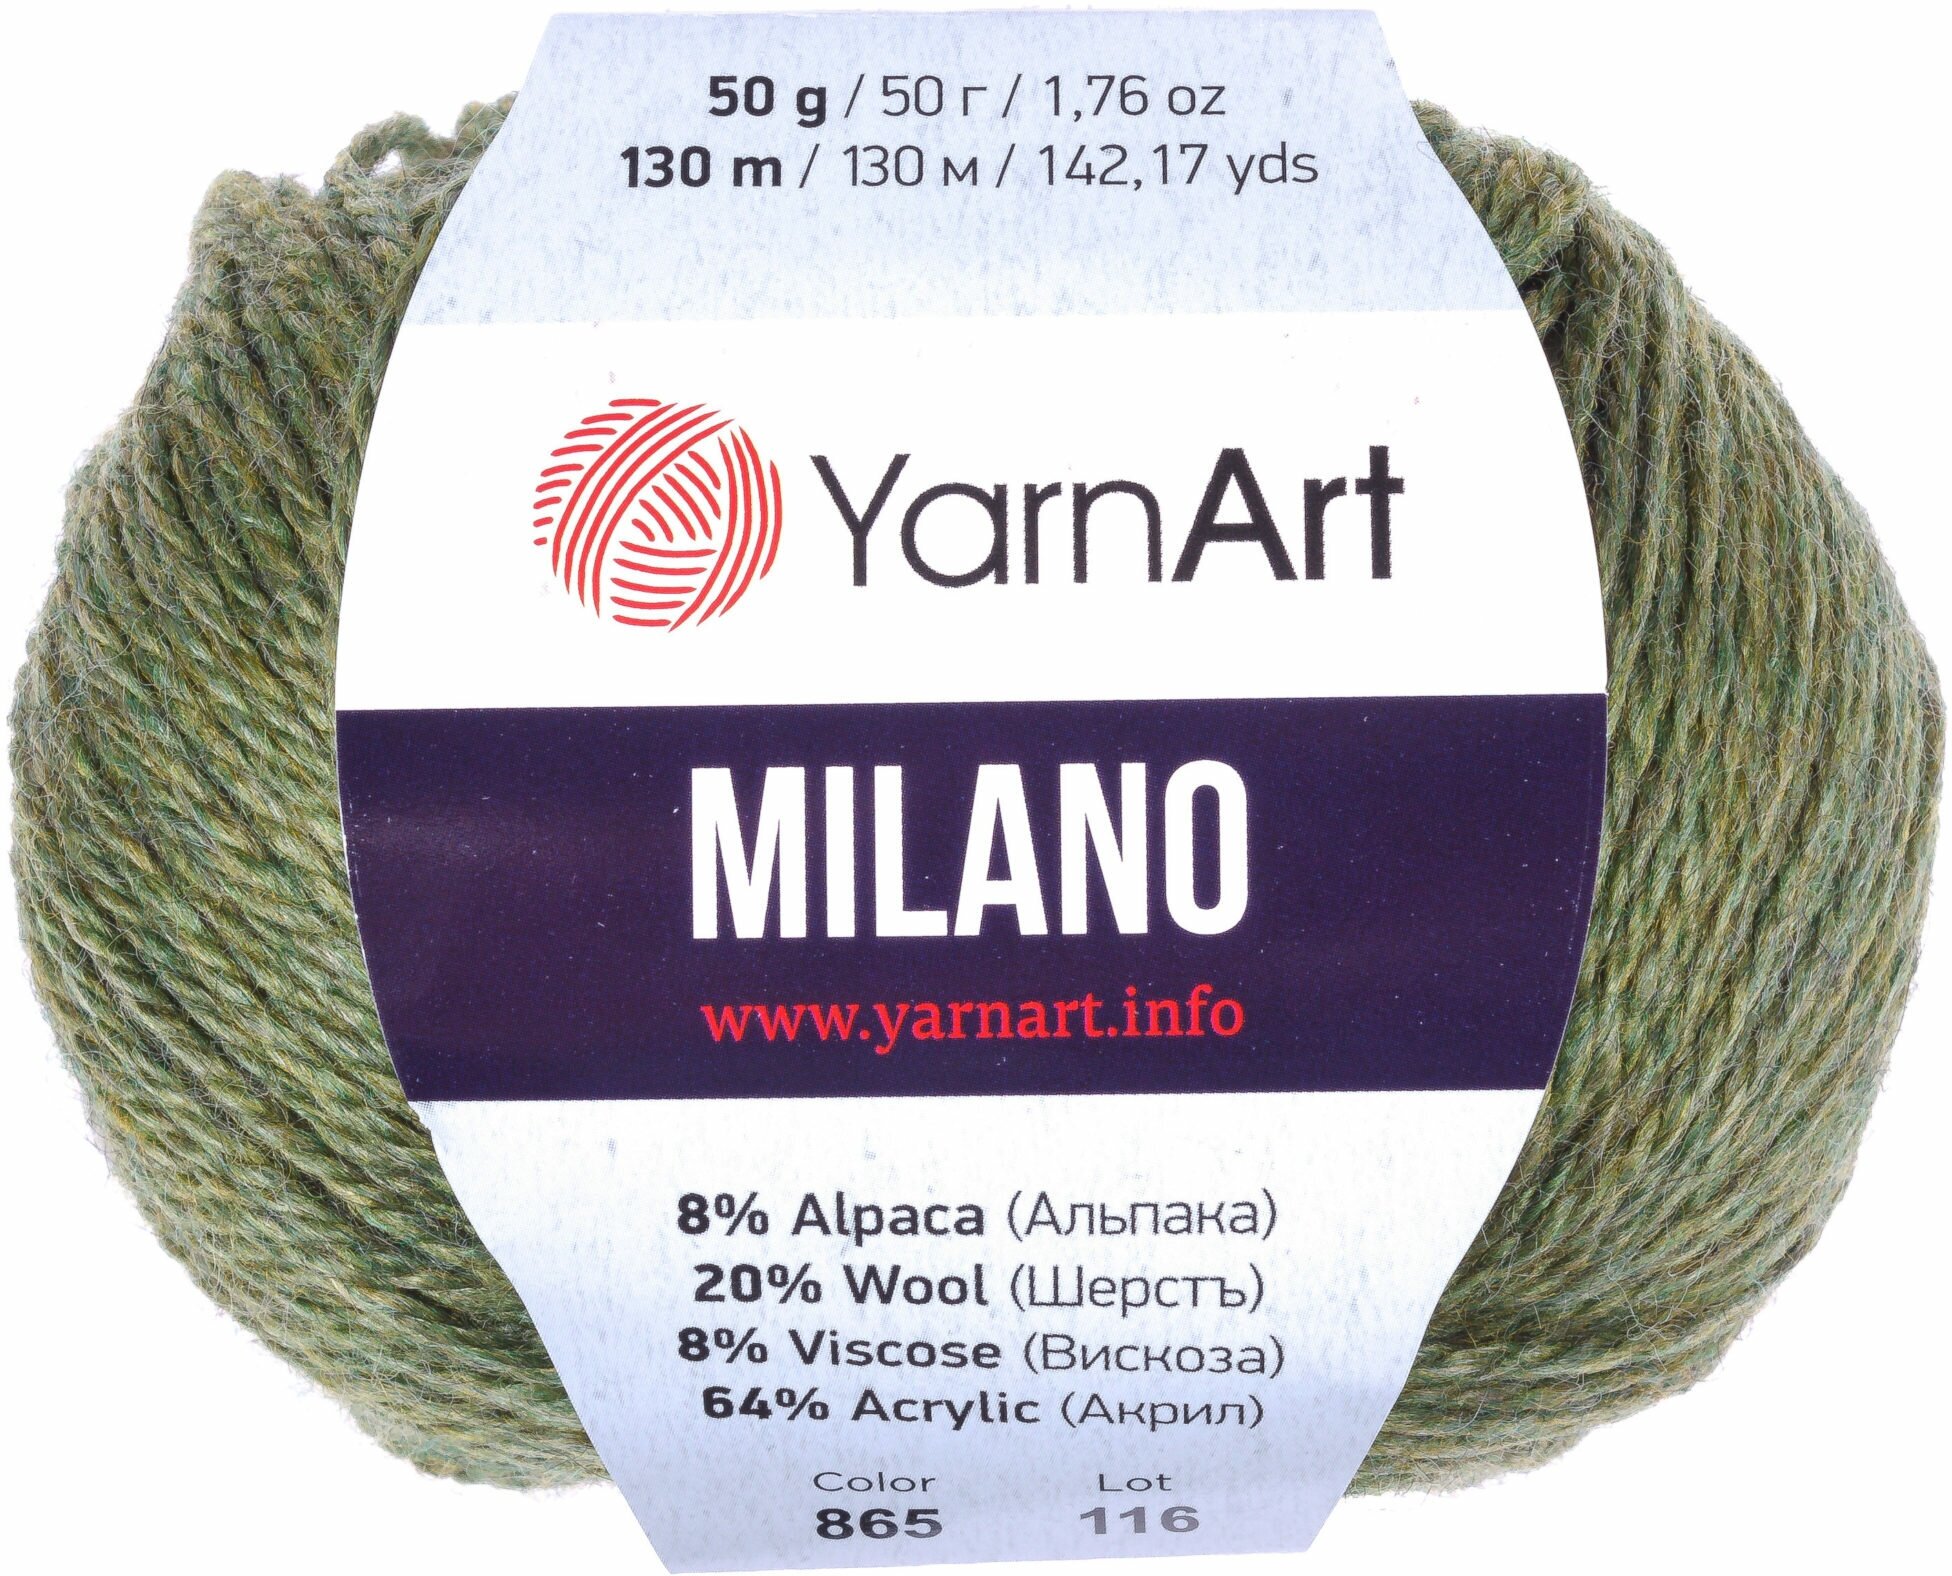 Пряжа YarnArt Milano 20 % шерсть 8 % альпака 64 % акрил 8 % вискоза 50 г